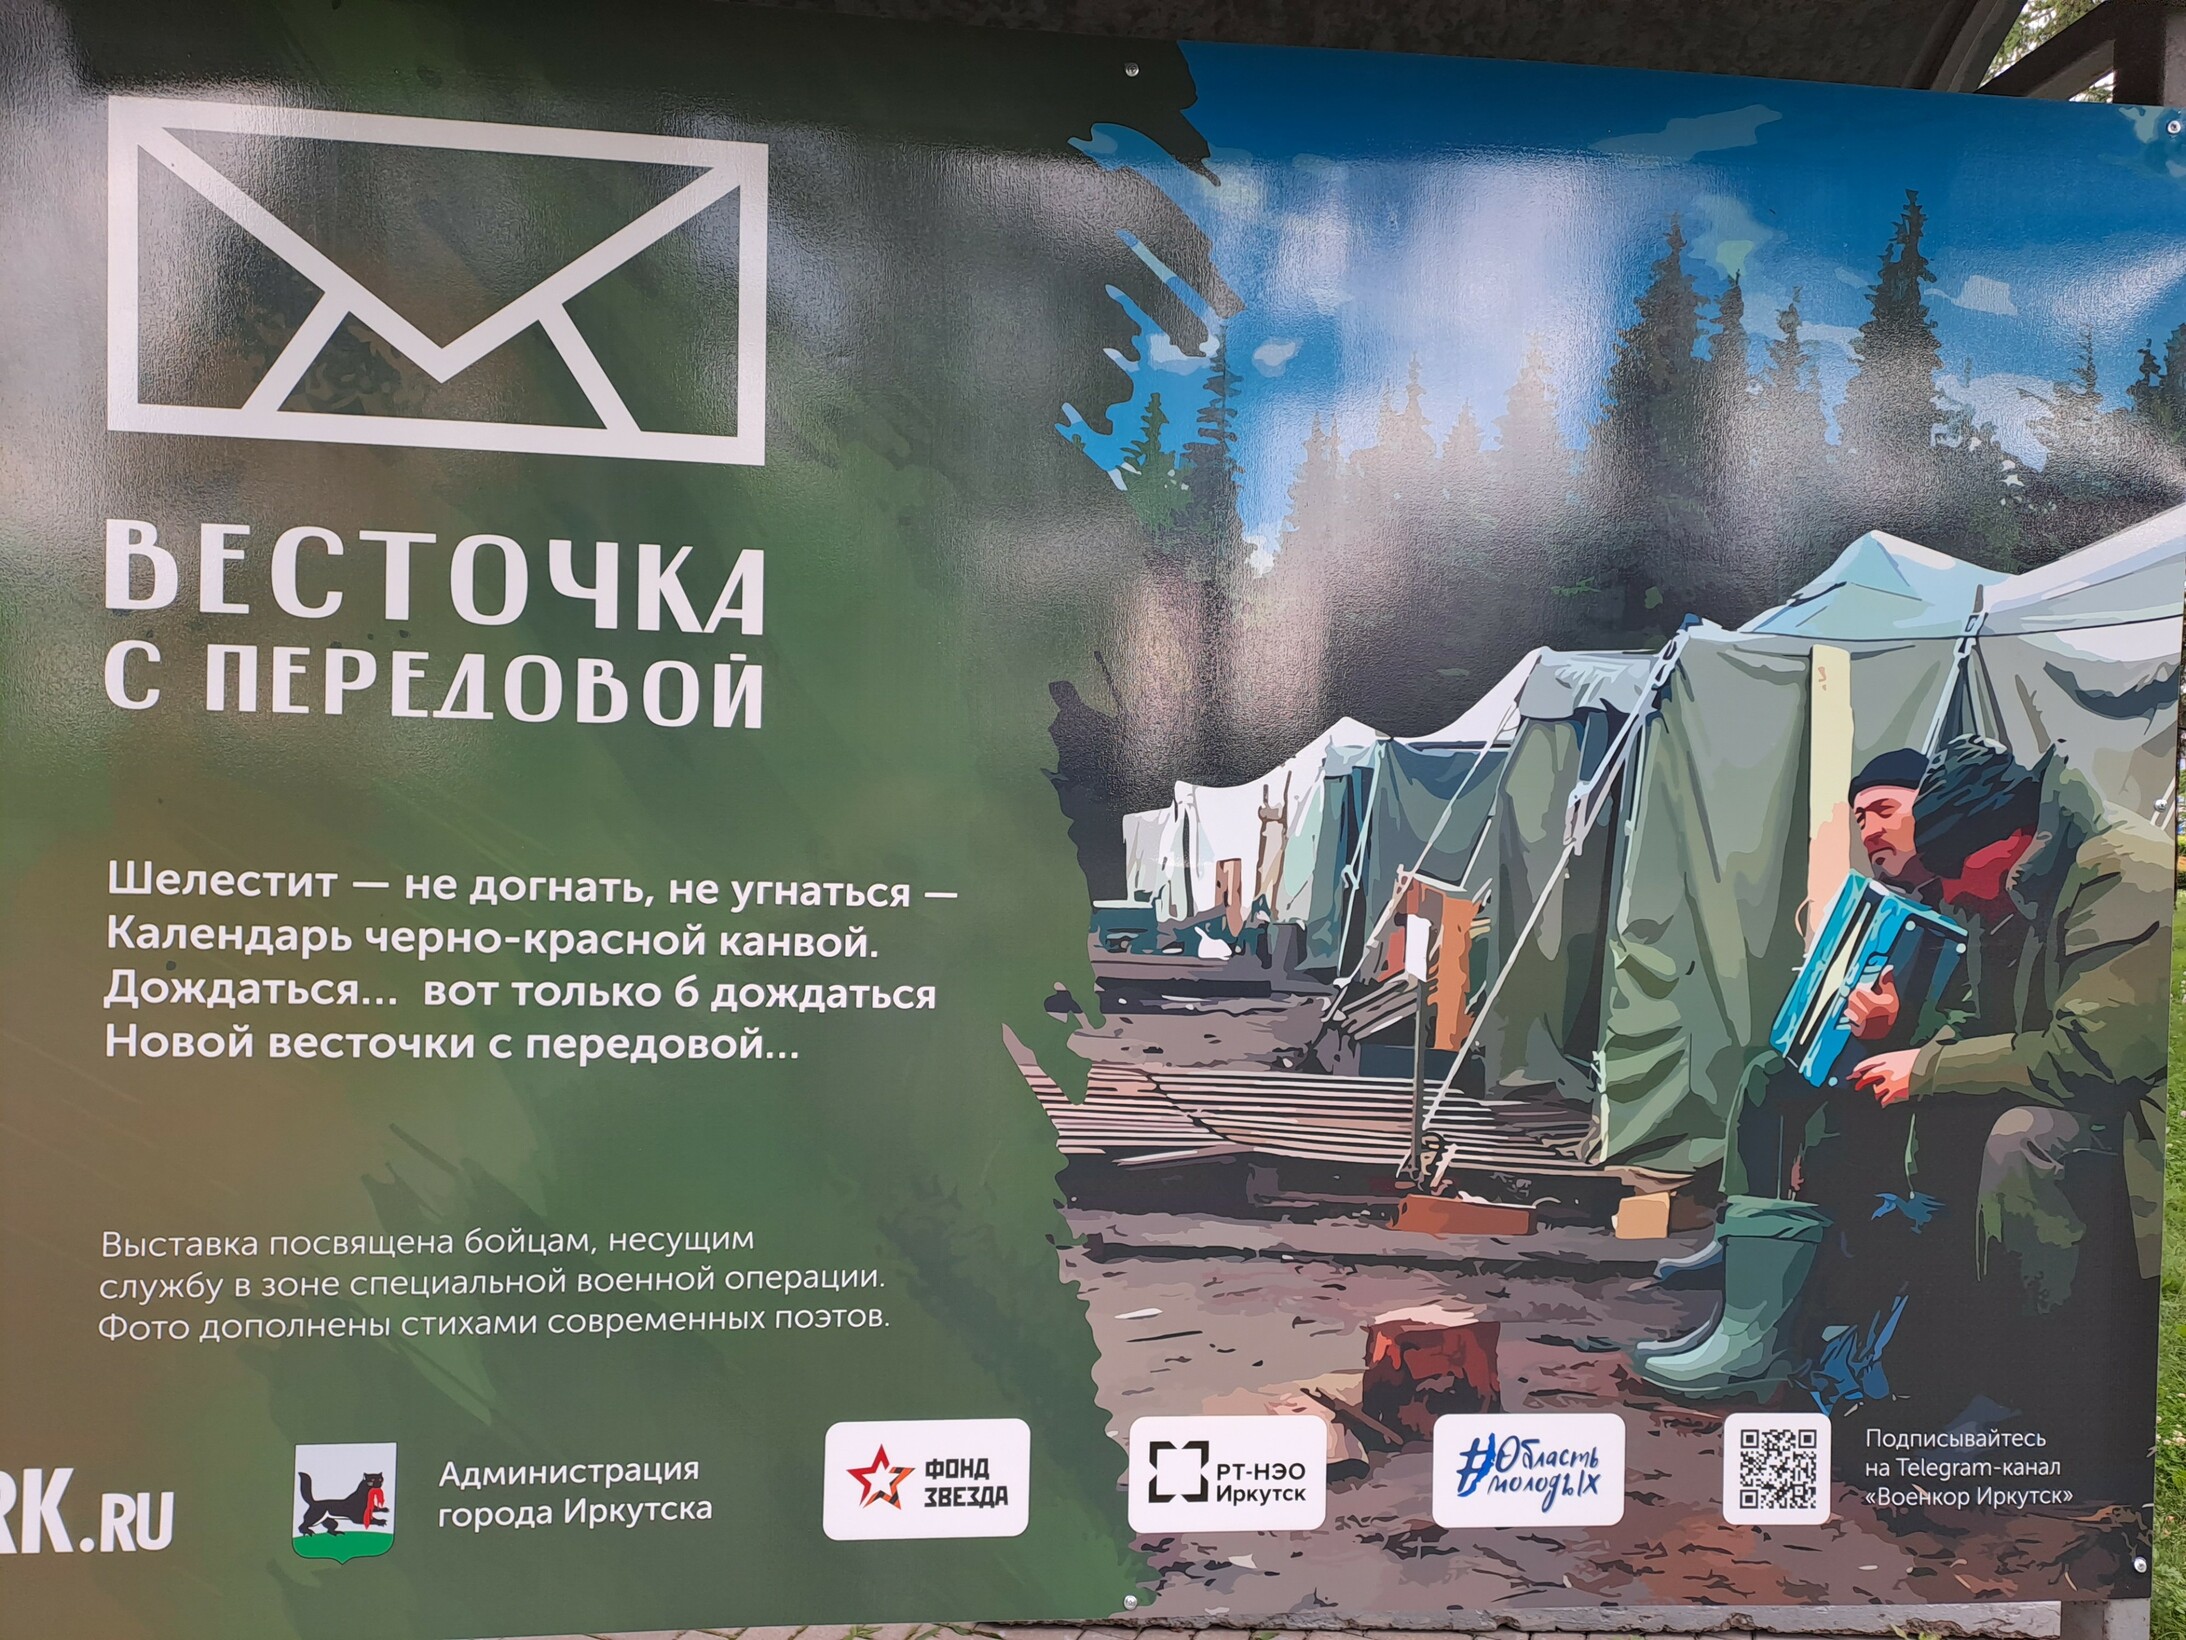 Irkutsk, den Kämpfern an der Front gewidmet